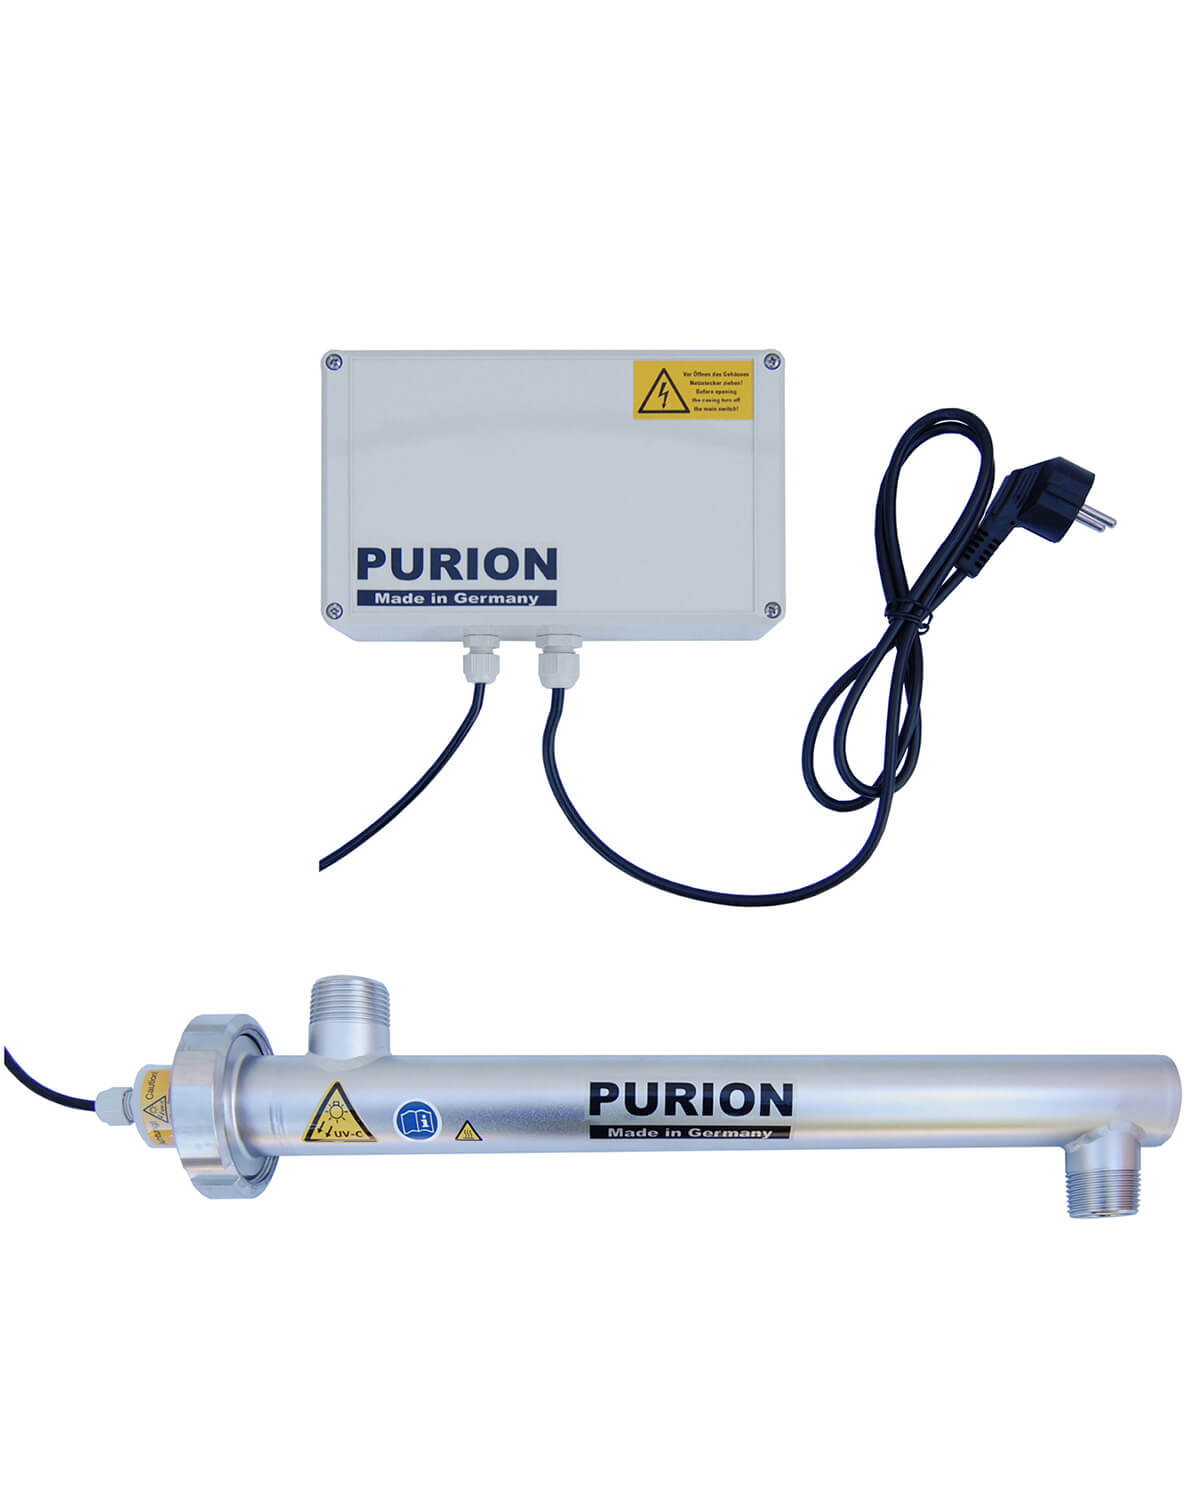 Der PURION 1000 110 - 240 V AC Basic der PURION GmbH nutzt UV-C-Licht zur Wasserdesinfektion, um sauberes und sicheres Trinkwasser bereitzustellen.